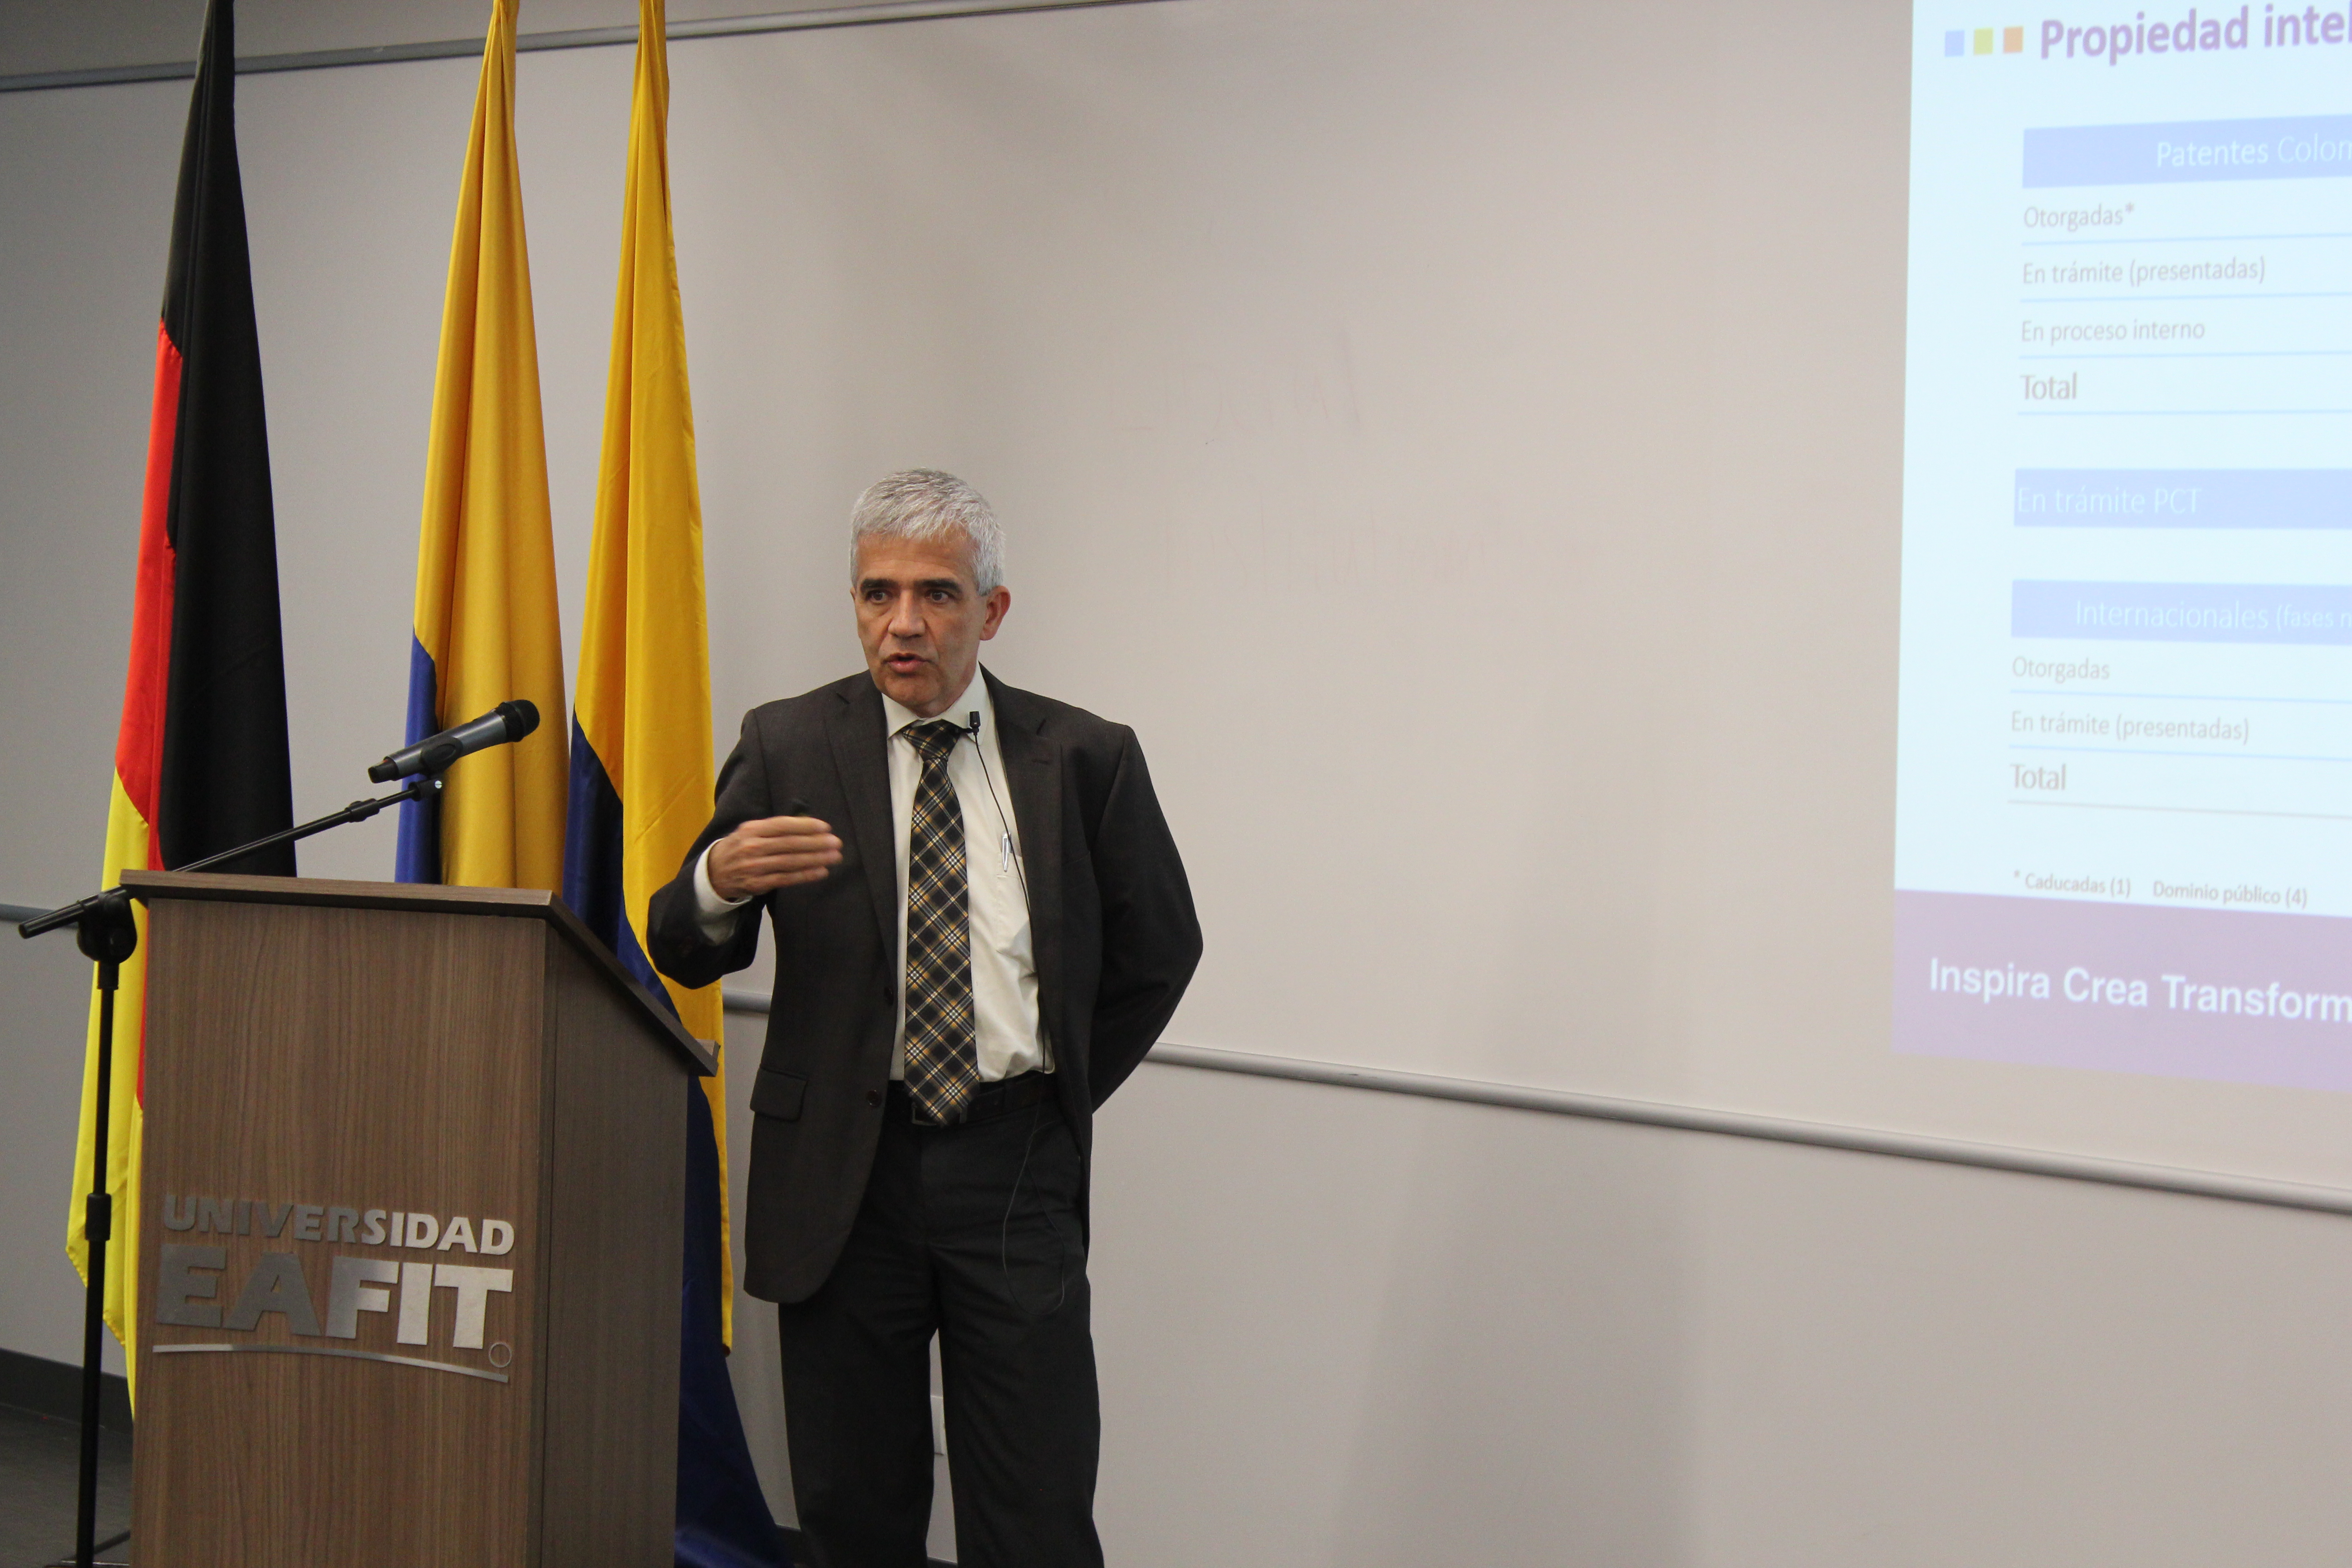 Dr. Juan Felipe Mejía von der Fakultät Wirtschaft und Finanzwesen der EAFIT präsentierte laufende deutsch-kolumbianische Initiativen